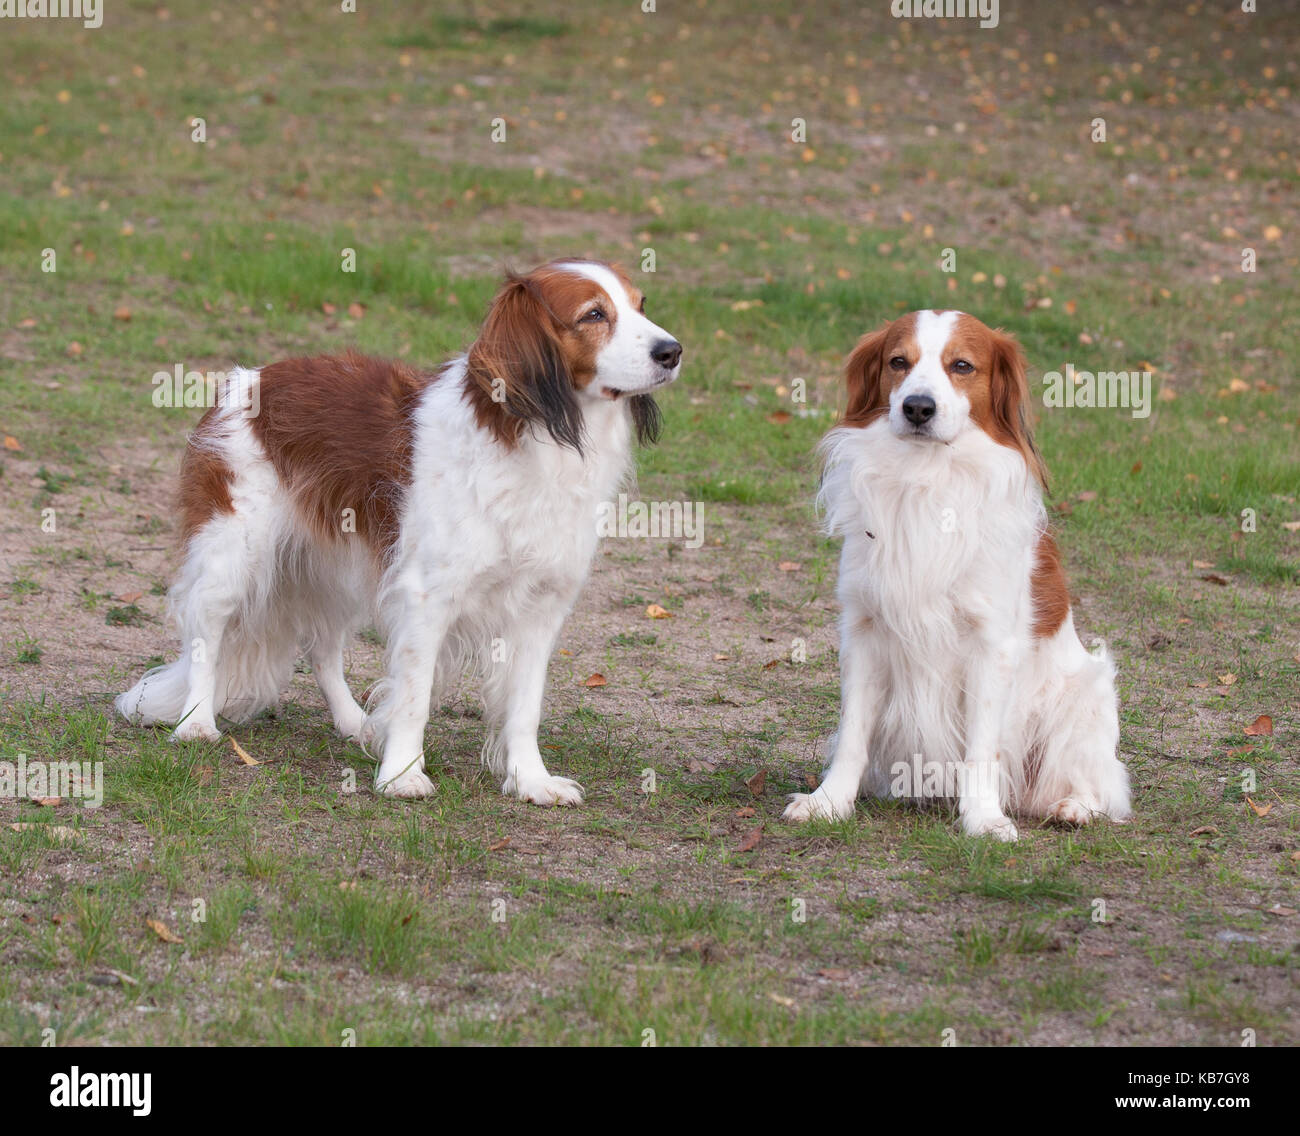 Das Kooikerhondje 2017 ist ein spaniel Art Hund holländischer Abstammung  Stockfotografie - Alamy